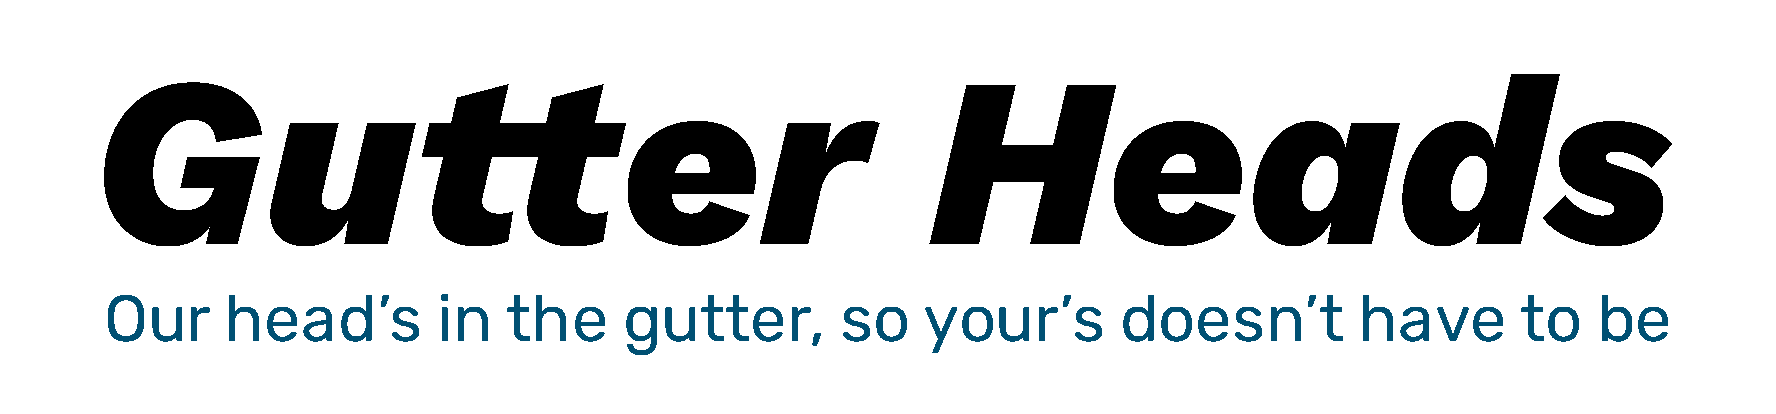 gutter heads logo